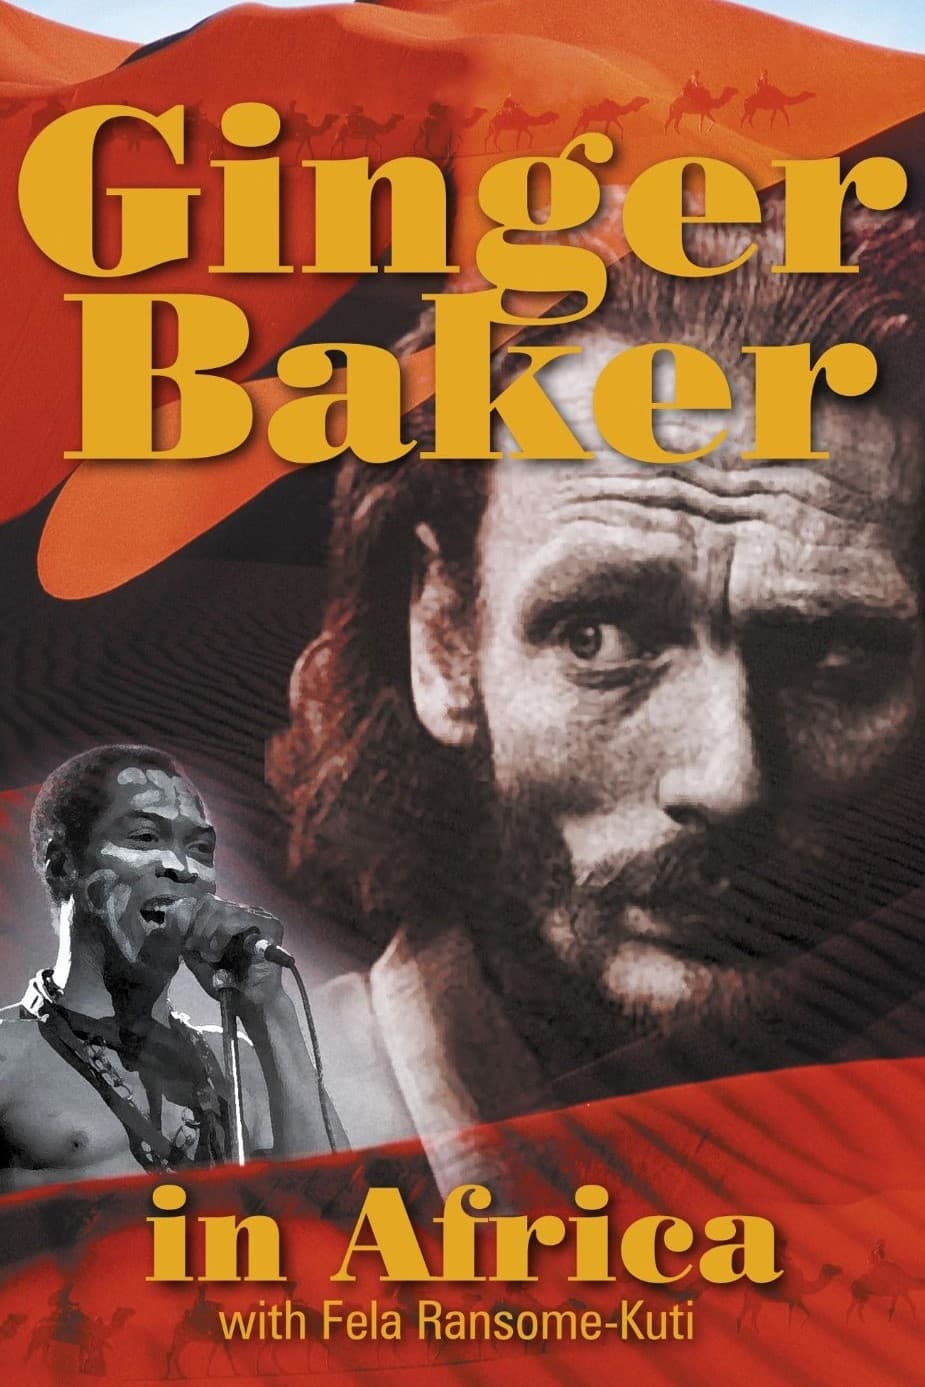 Ginger Baker: In Africa